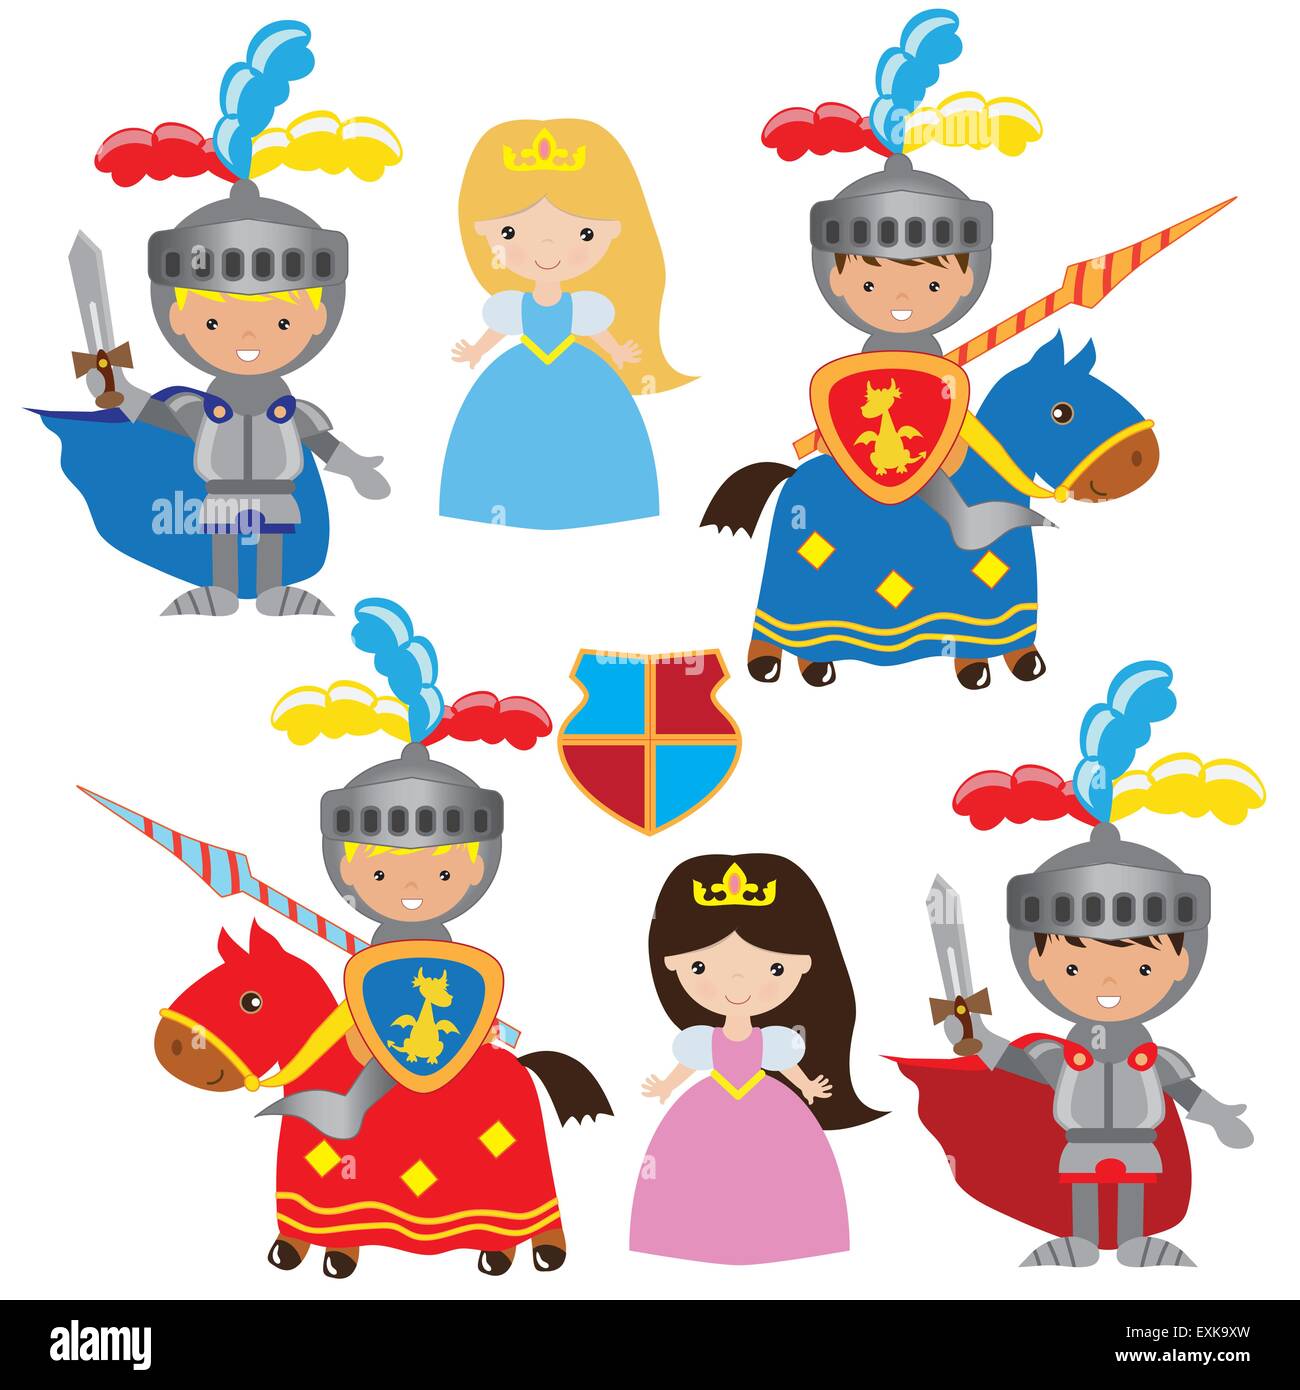 knight,princess,medieval,vector,cartoon,illustration Stock Vector